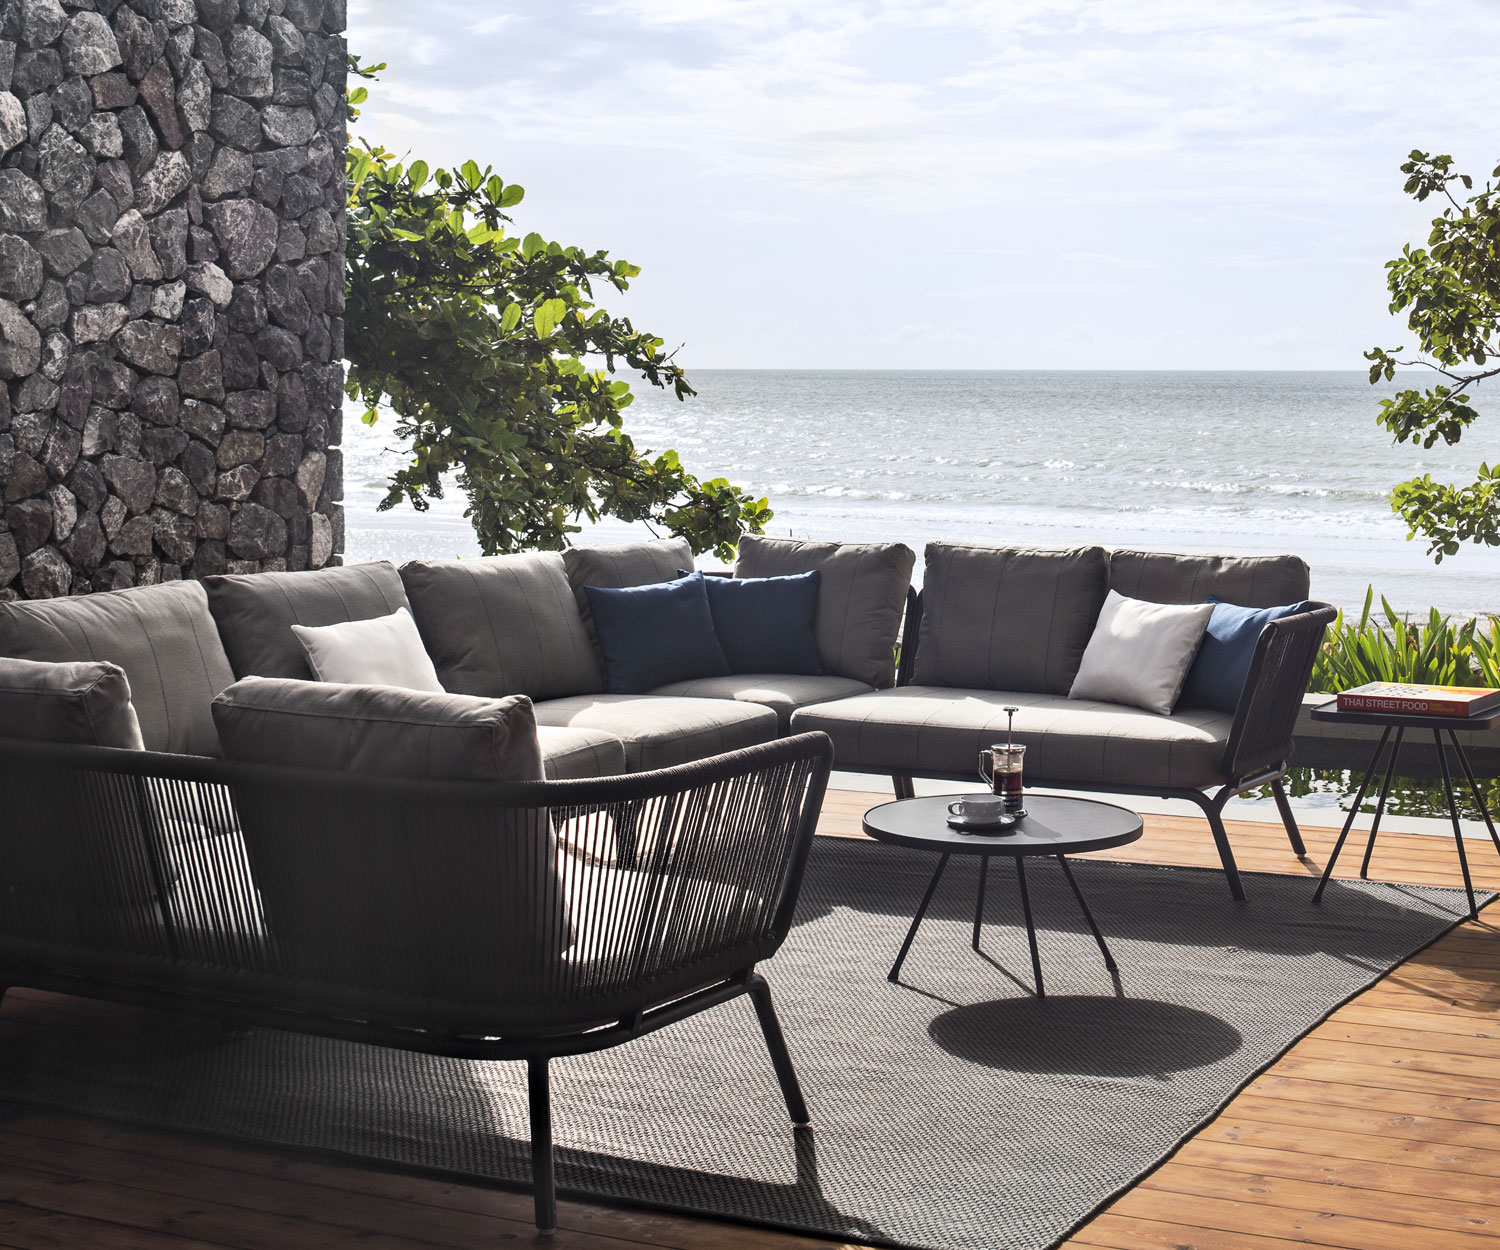 Oasiq Yland Eckbank Design Sofa mit Polsterauflage in Grau auf einer Terrasse